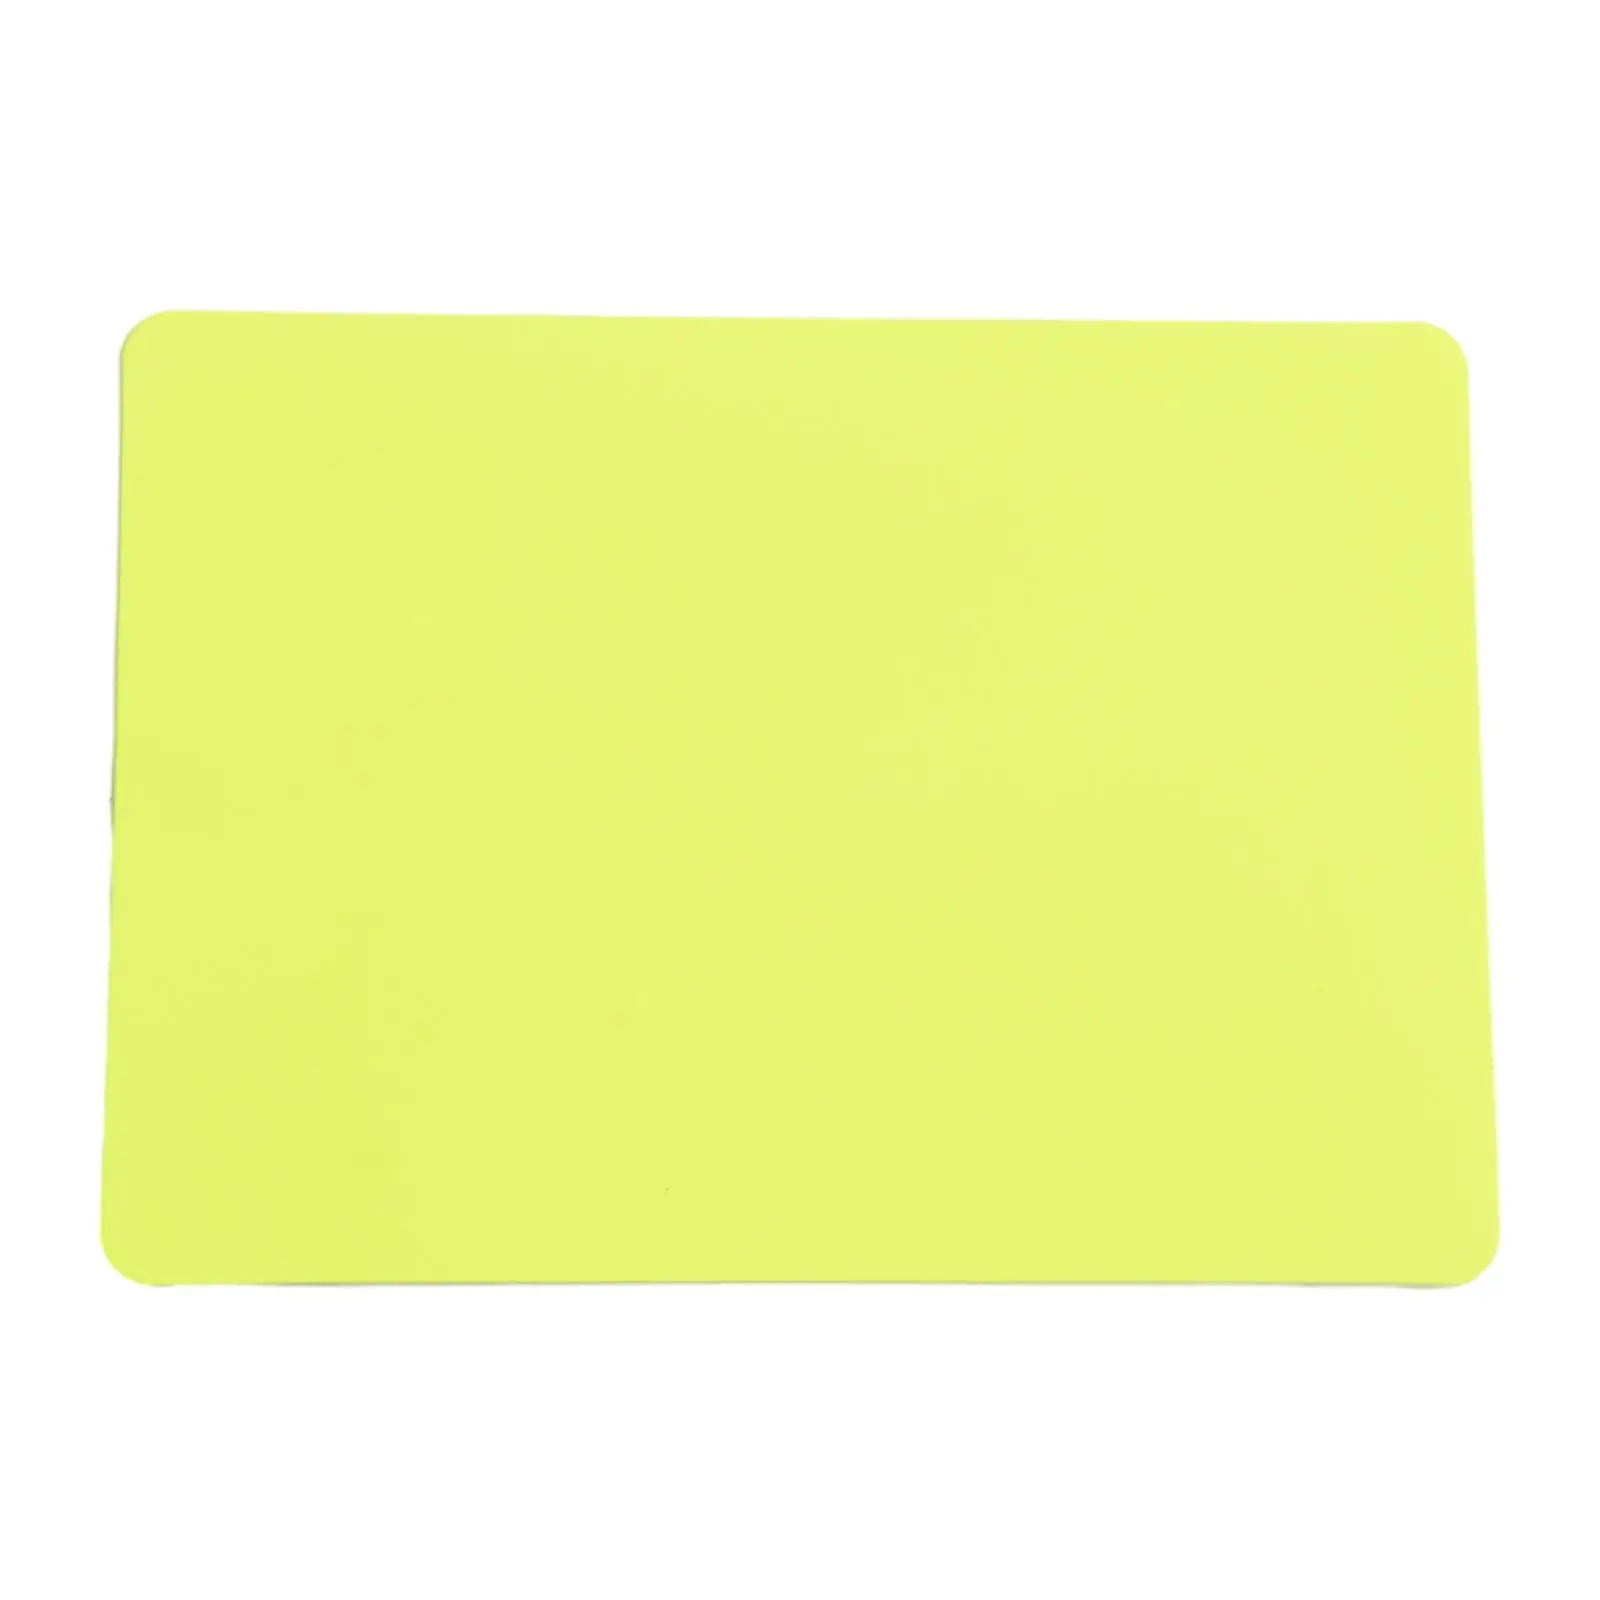 Durabil Cartonaș Roșu Card de Cărți Despre 14g Aprox 11*8cm Ușor Pentru a Stoca Ușor PVC Roșu Galben de Arbitri de Fotbal - 1